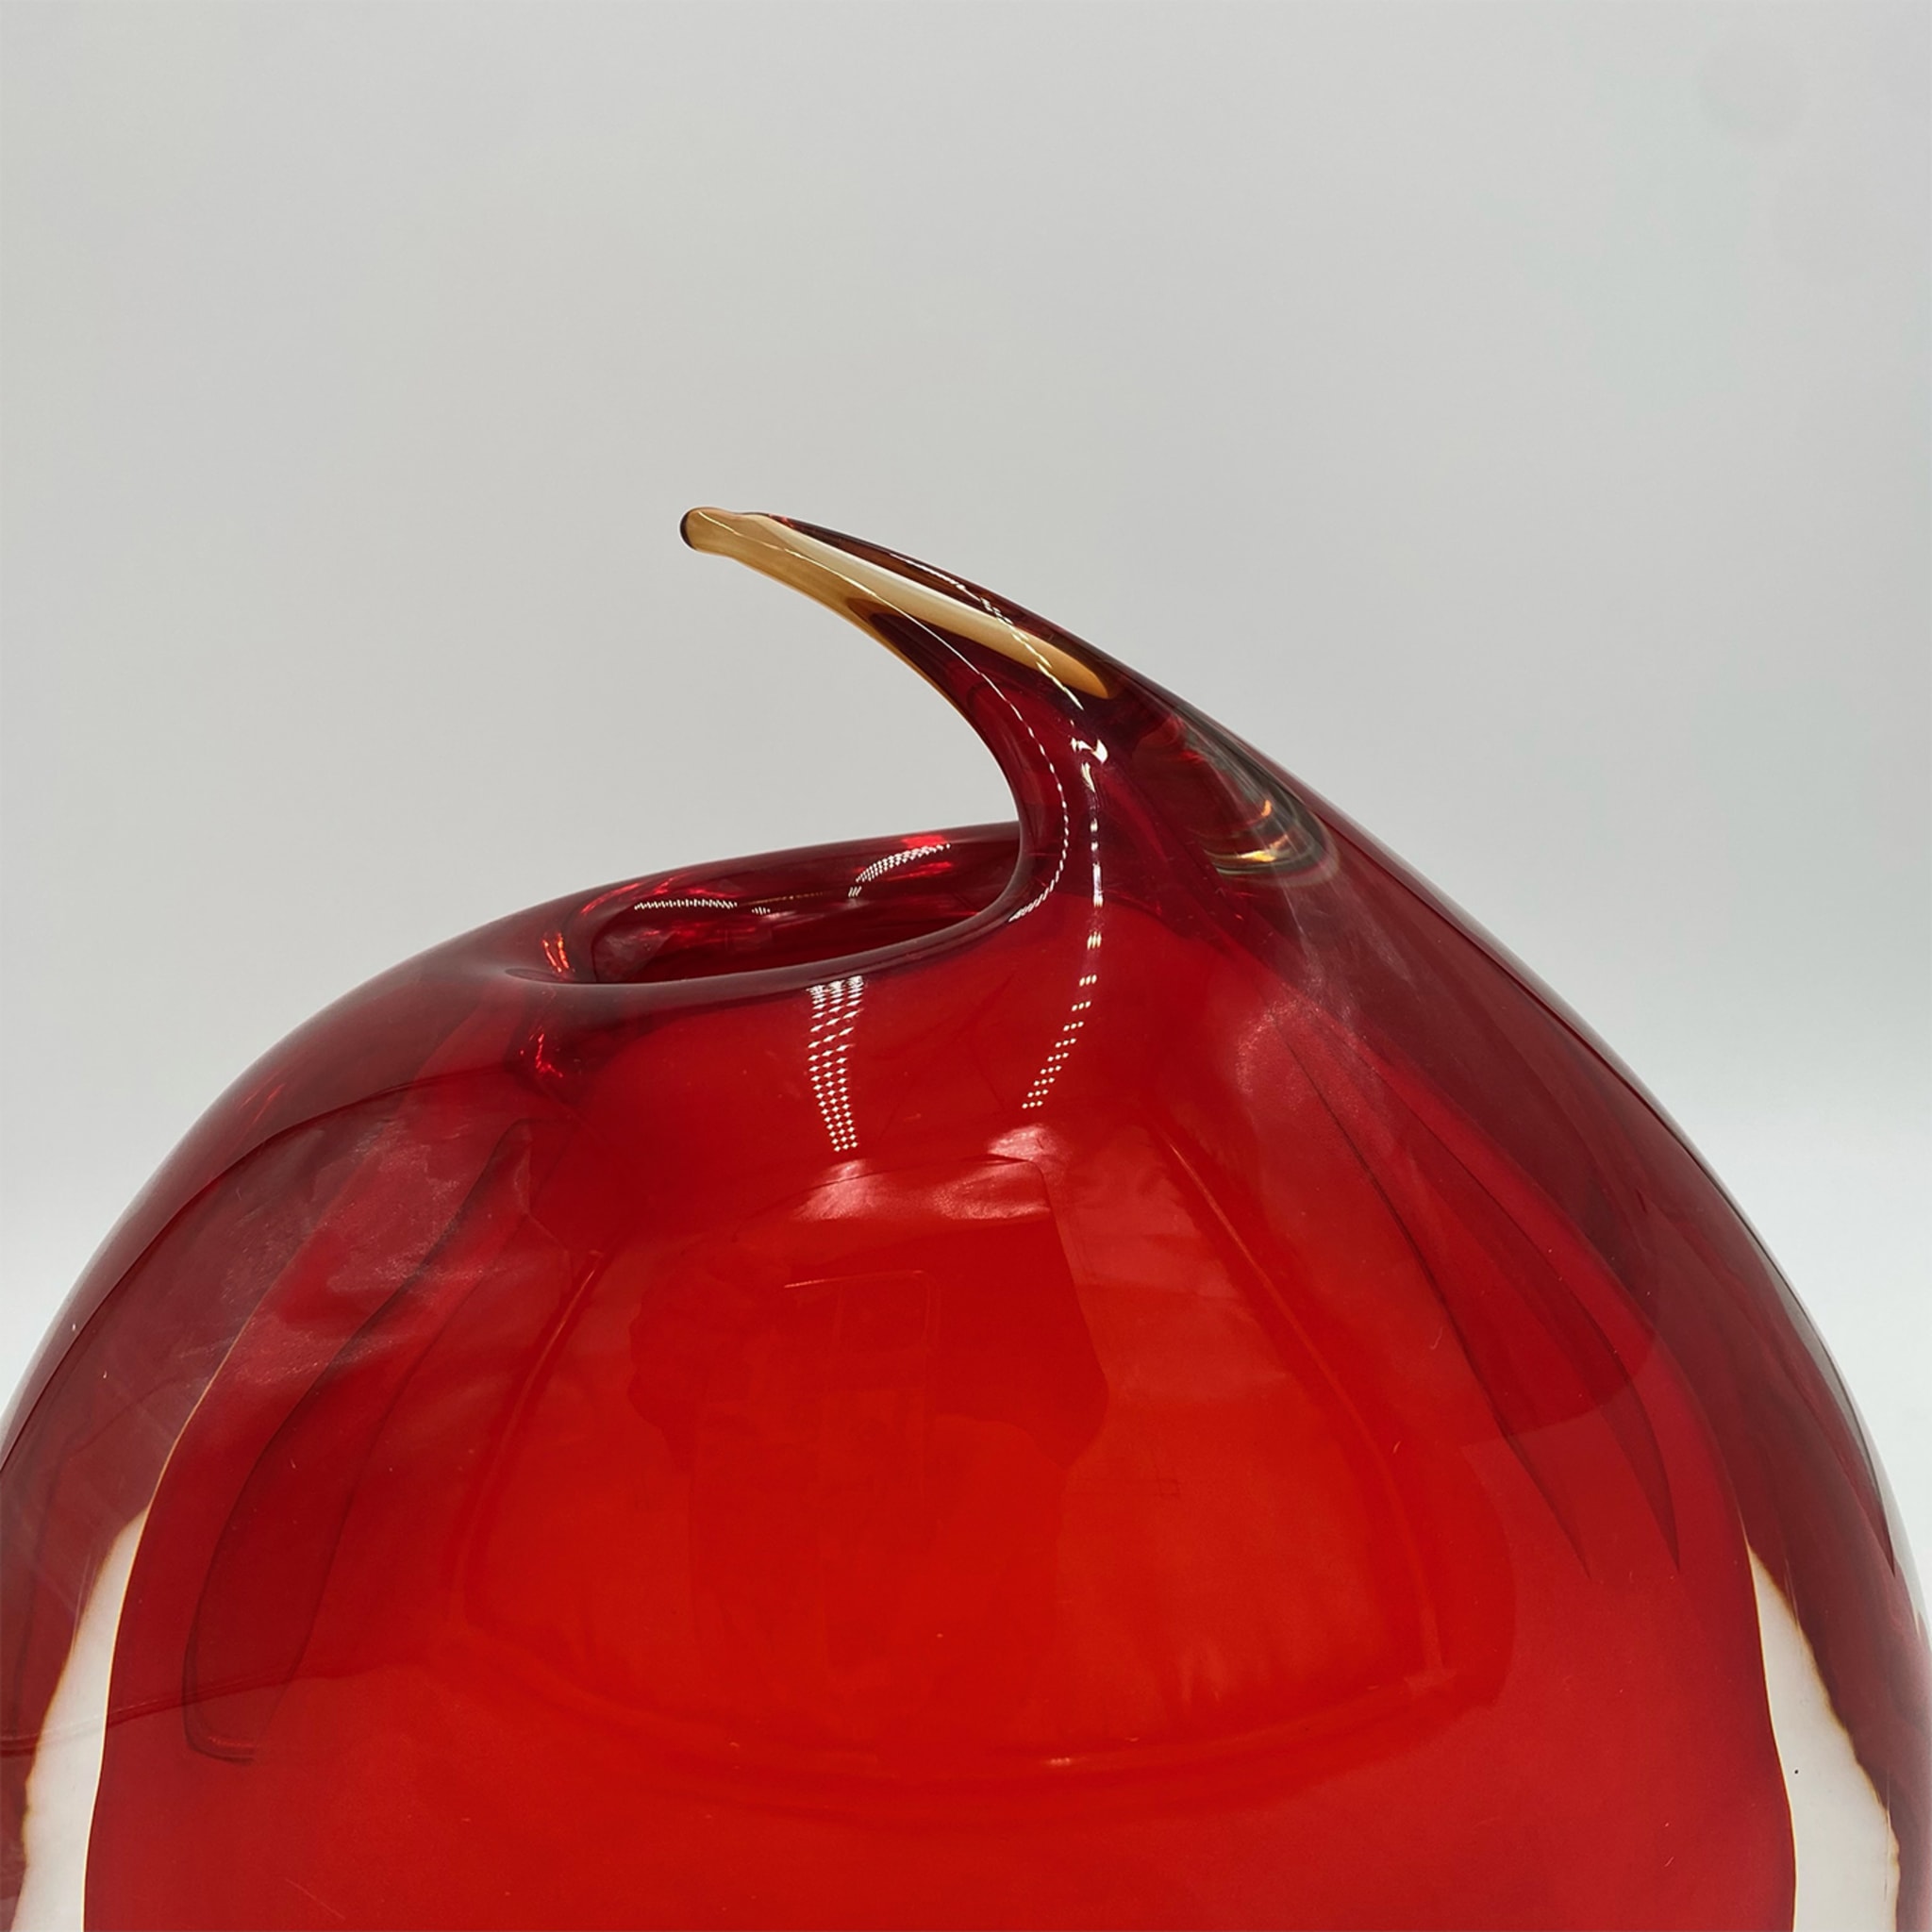 Vase rouge Unghia - Vue alternative 1